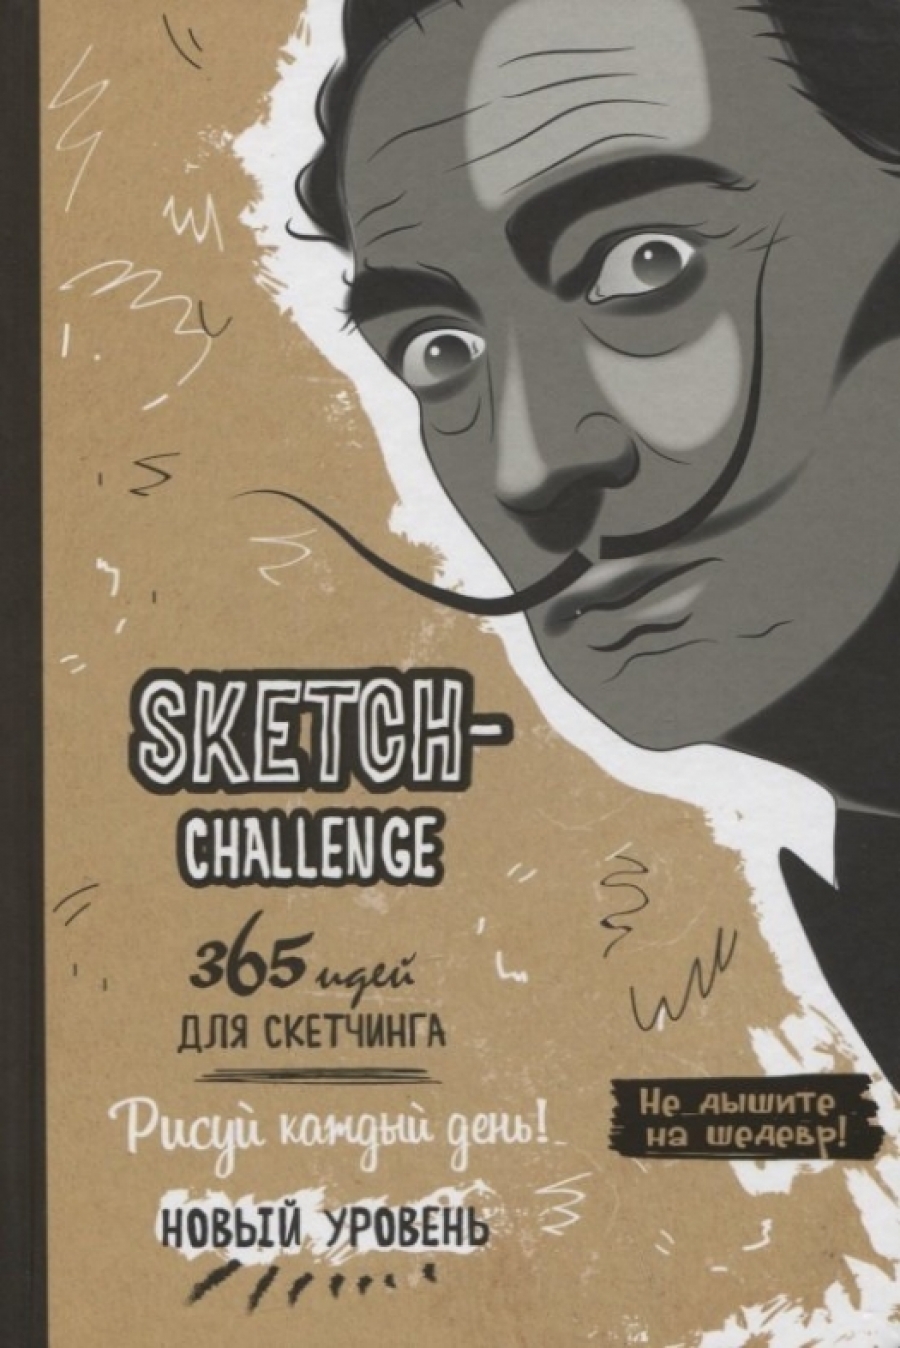 Потапова А. - Sketch-Challenge. 365 идей для скетчинга. Рисуй каждый день! Новый уровень 